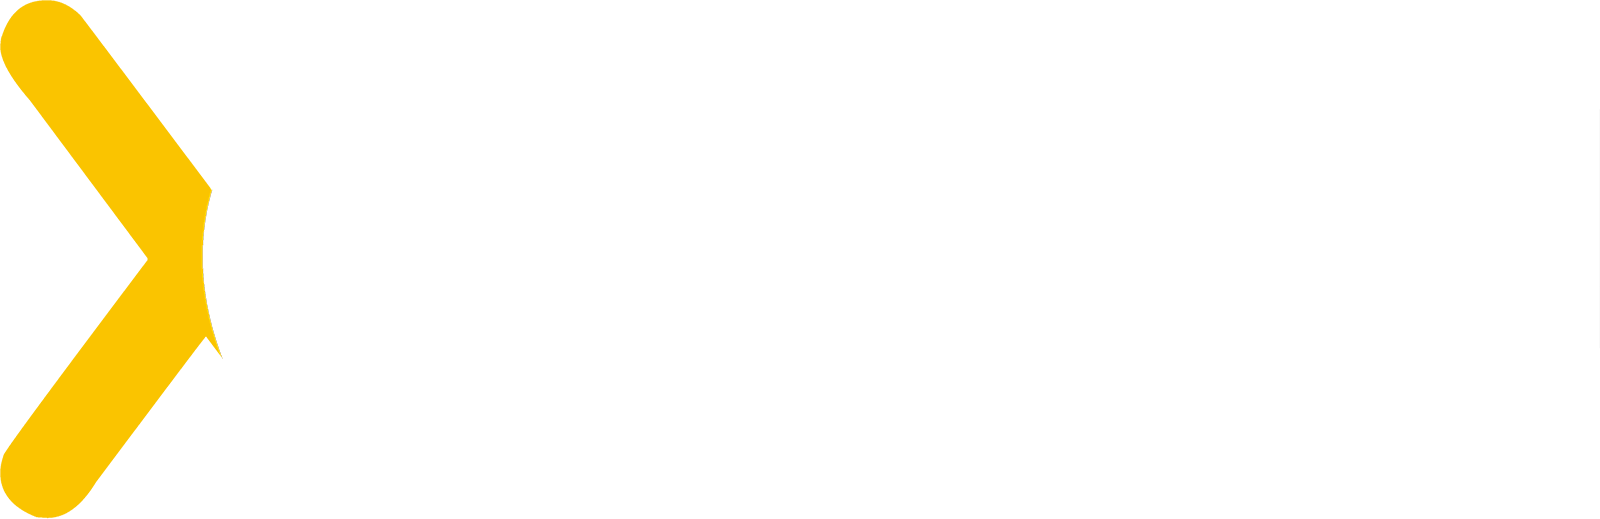 Xceed